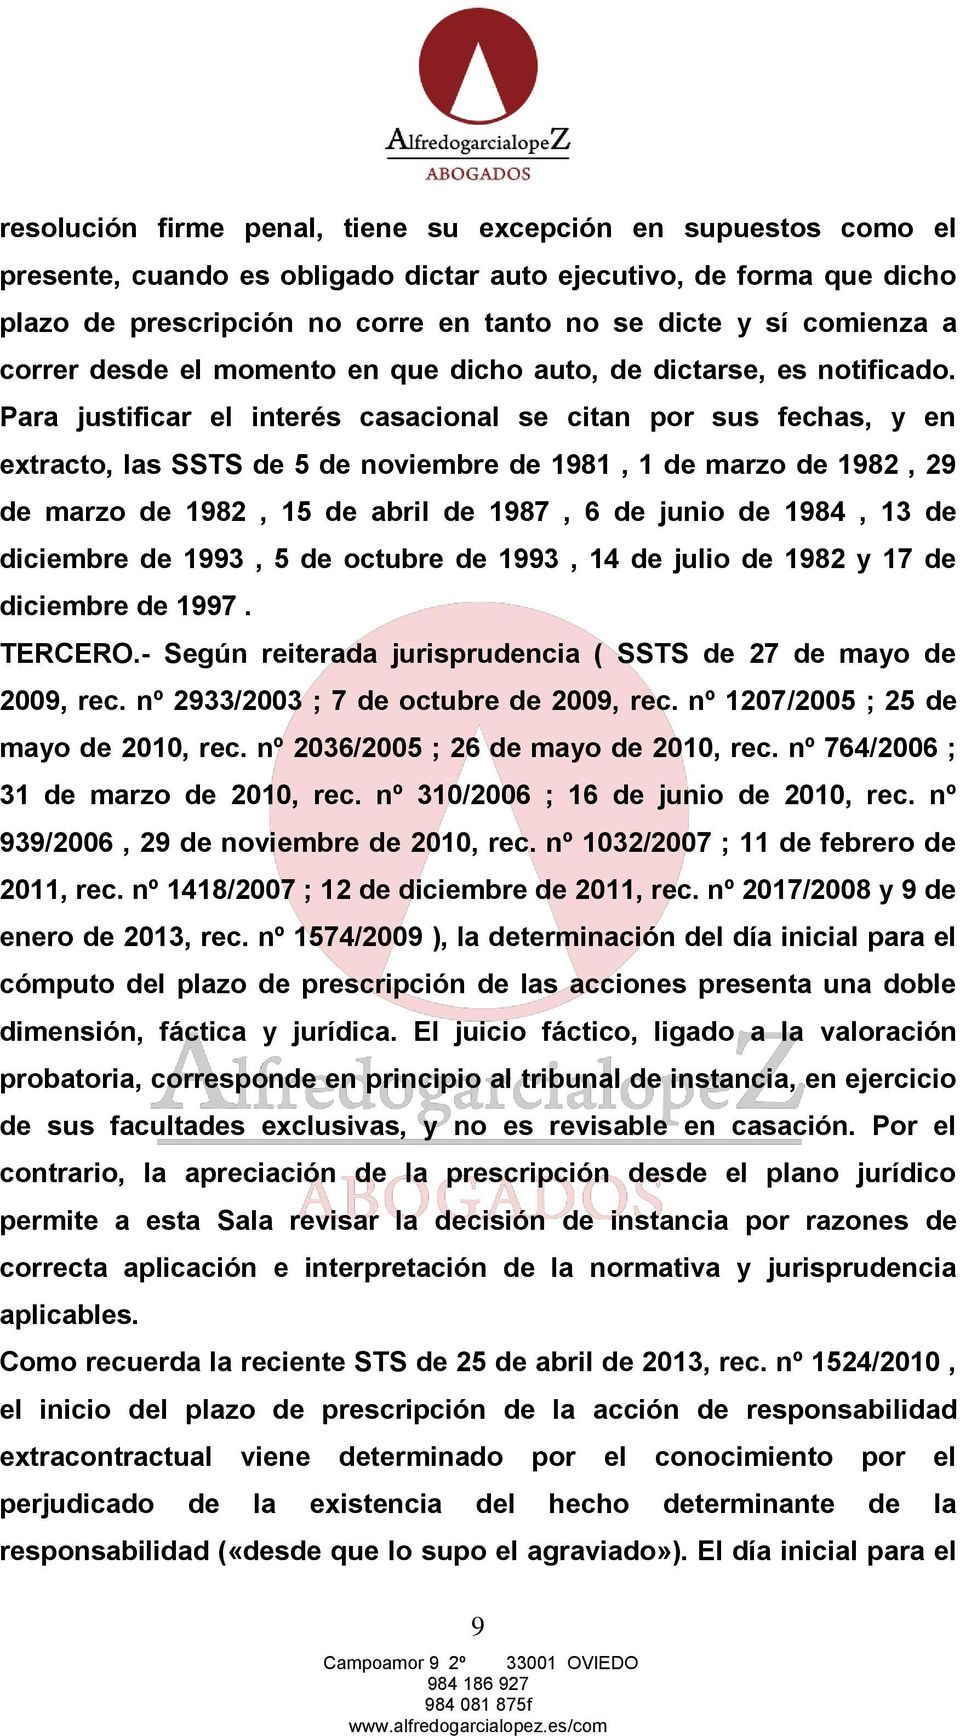 Para justificar el interés casacional se citan por sus fechas, y en extracto, las SSTS de 5 de noviembre de 1981, 1 de marzo de 1982, 29 de marzo de 1982, 15 de abril de 1987, 6 de junio de 1984, 13